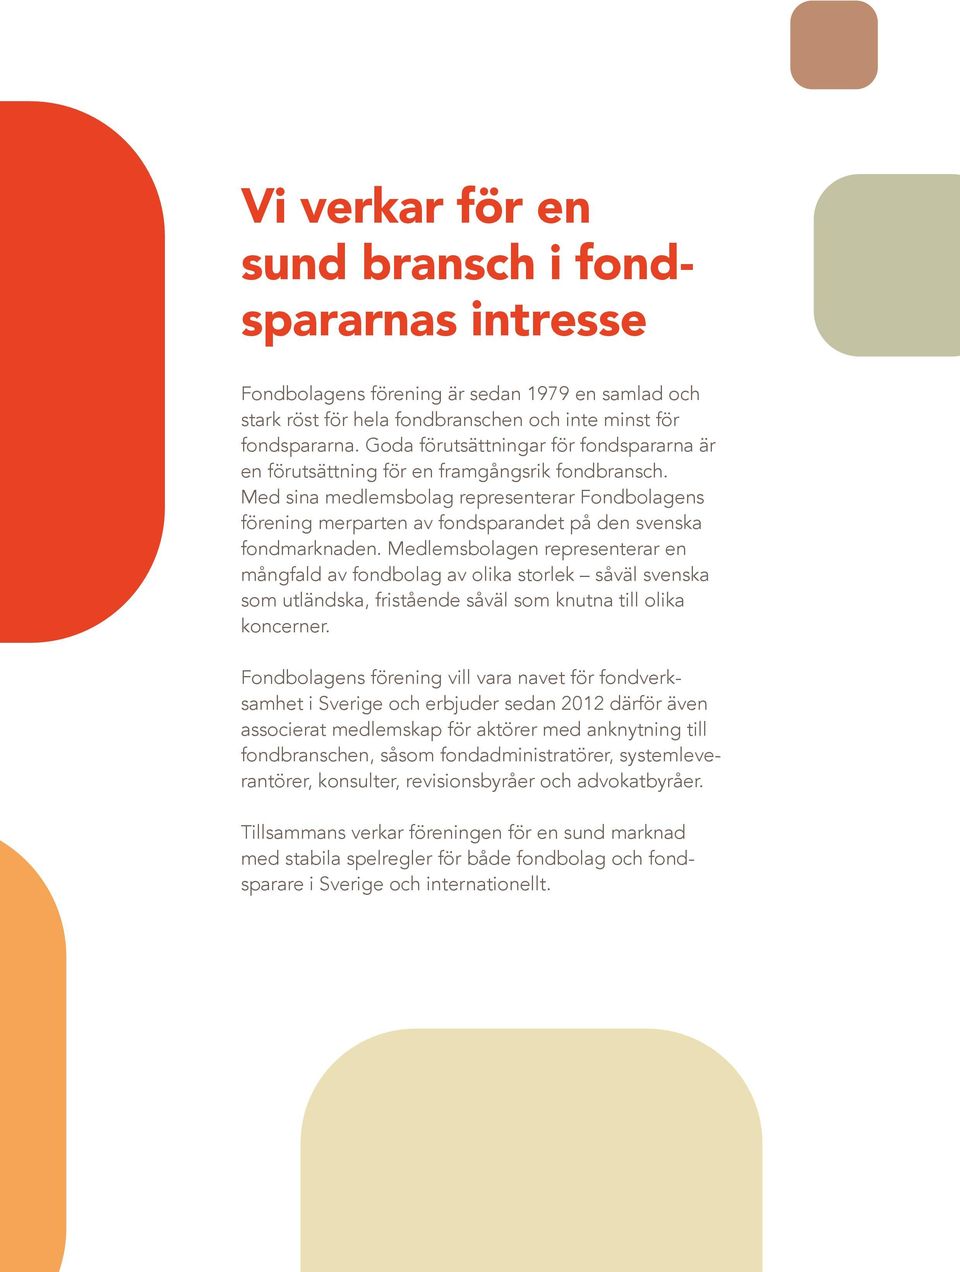 Med sina medlemsbolag representerar Fondbolagens förening merparten av fondsparandet på den svenska fondmarknaden.